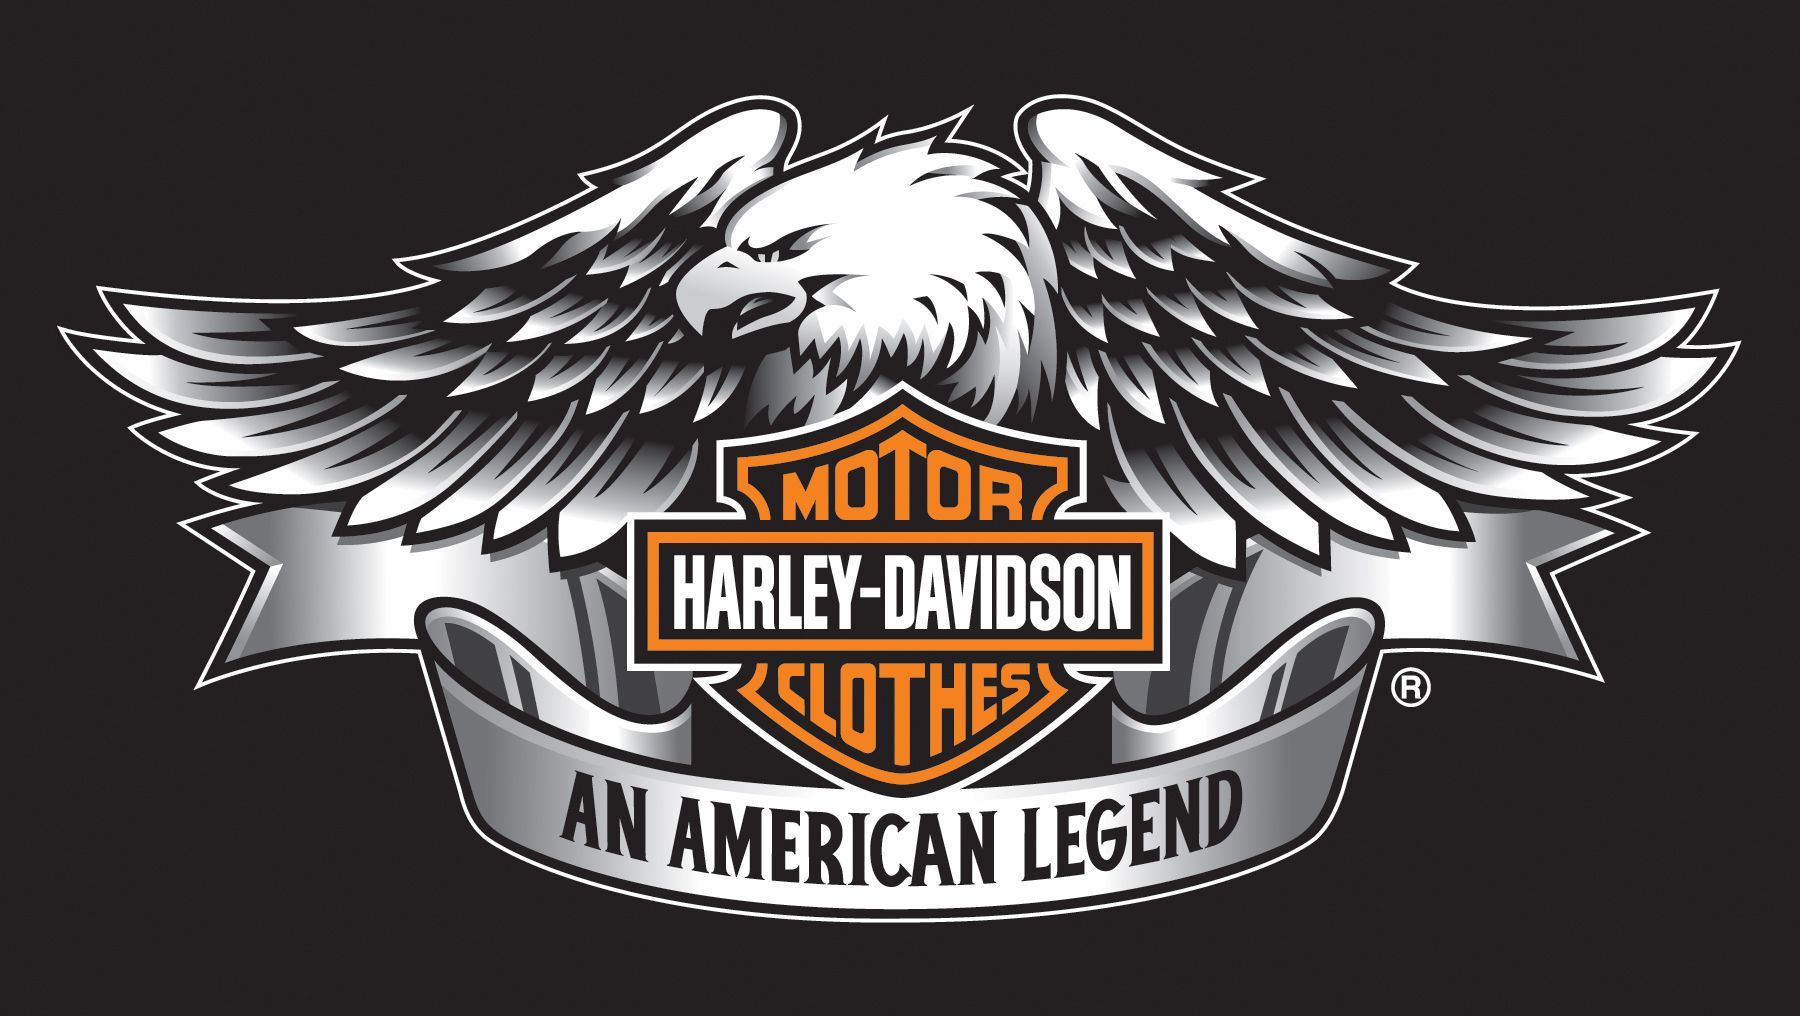 Harley Davidson Eagle Wallpaper Free Harley Davidson Eagle